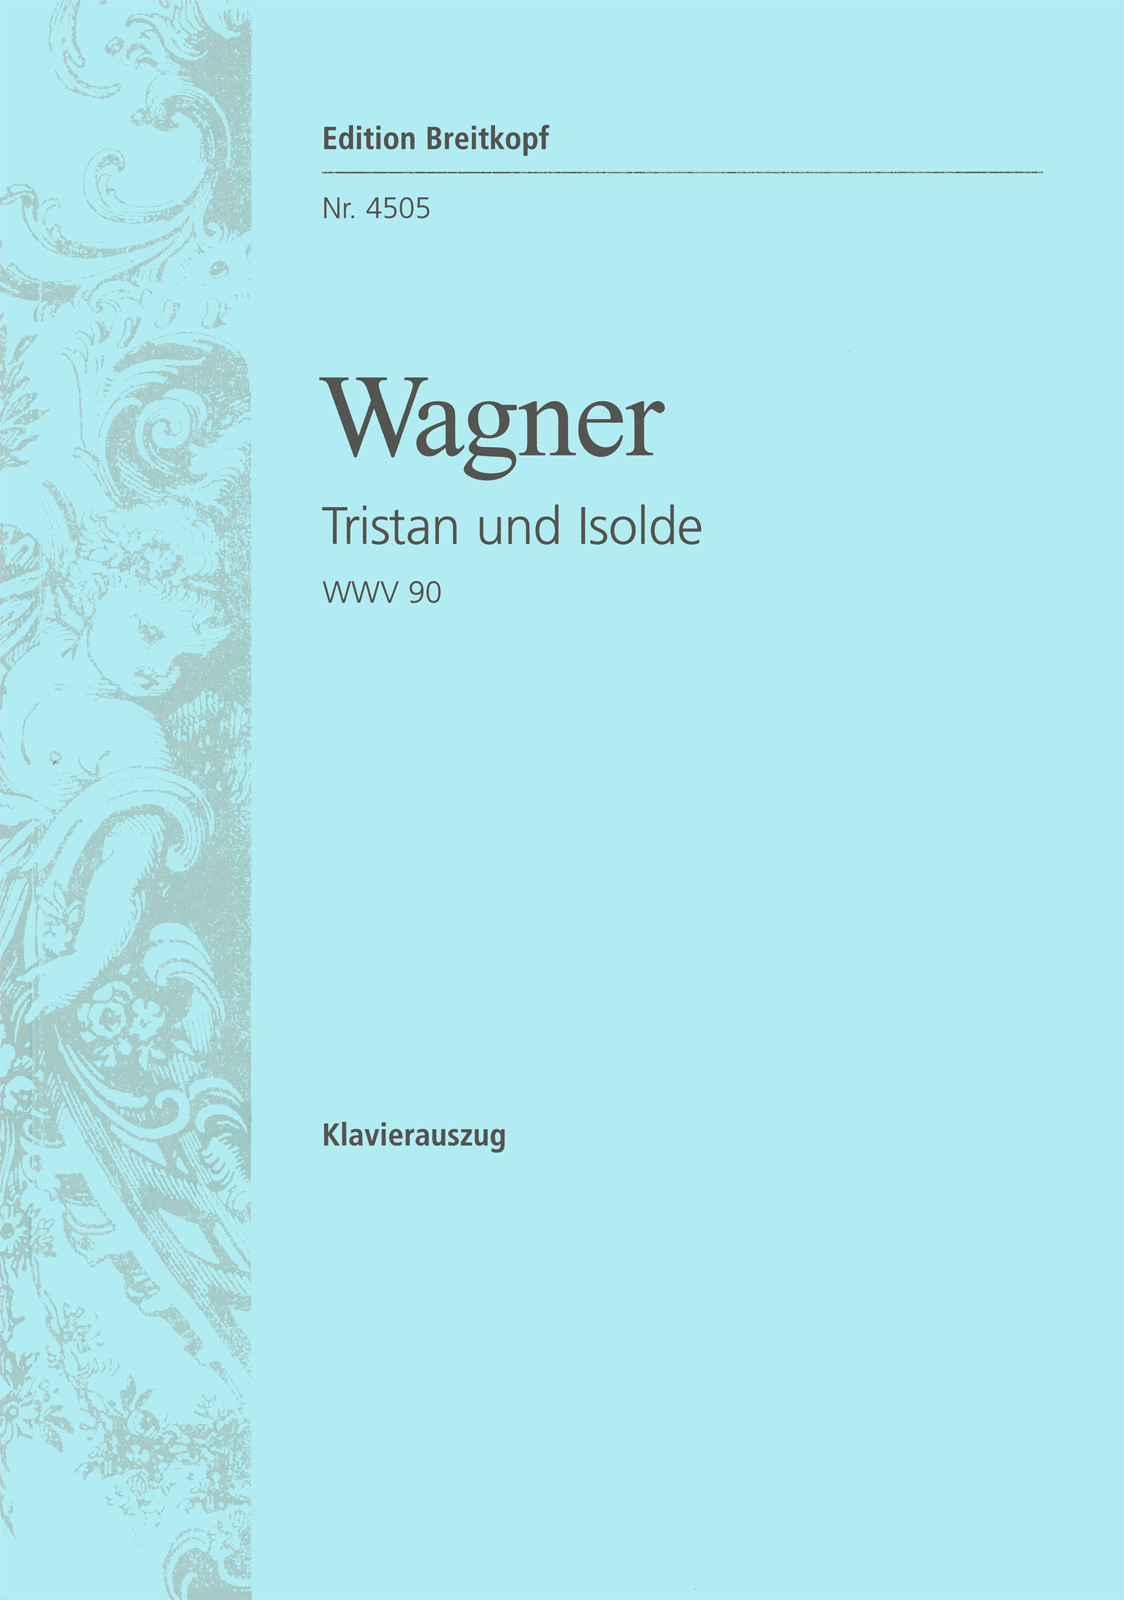 Wagner - TRISTAN UND ISOLDE WWV 90 KLAVIERAUSZUG